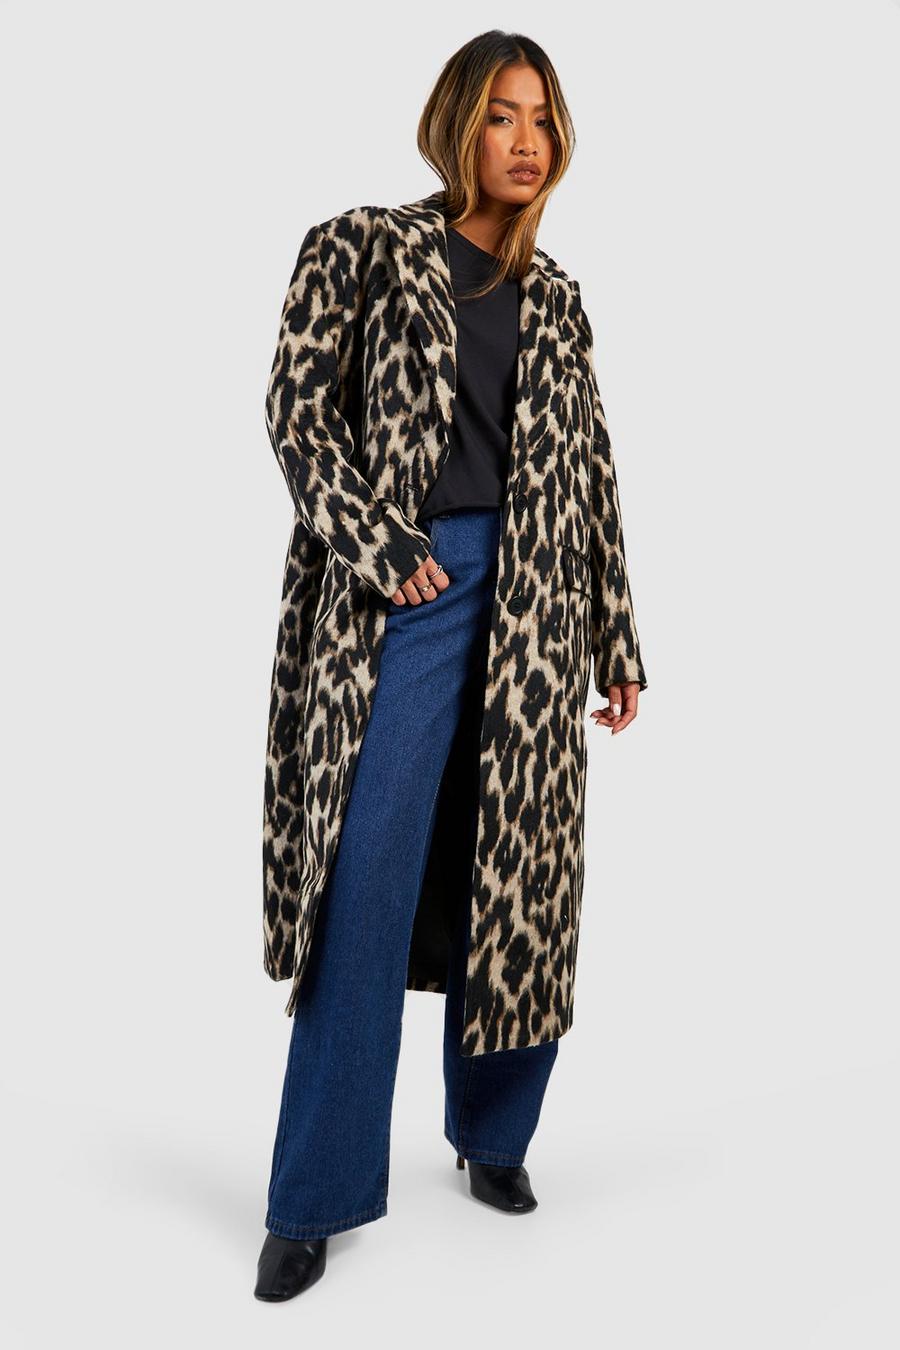 Oversized Textured Leopard Print Wool Look Coat